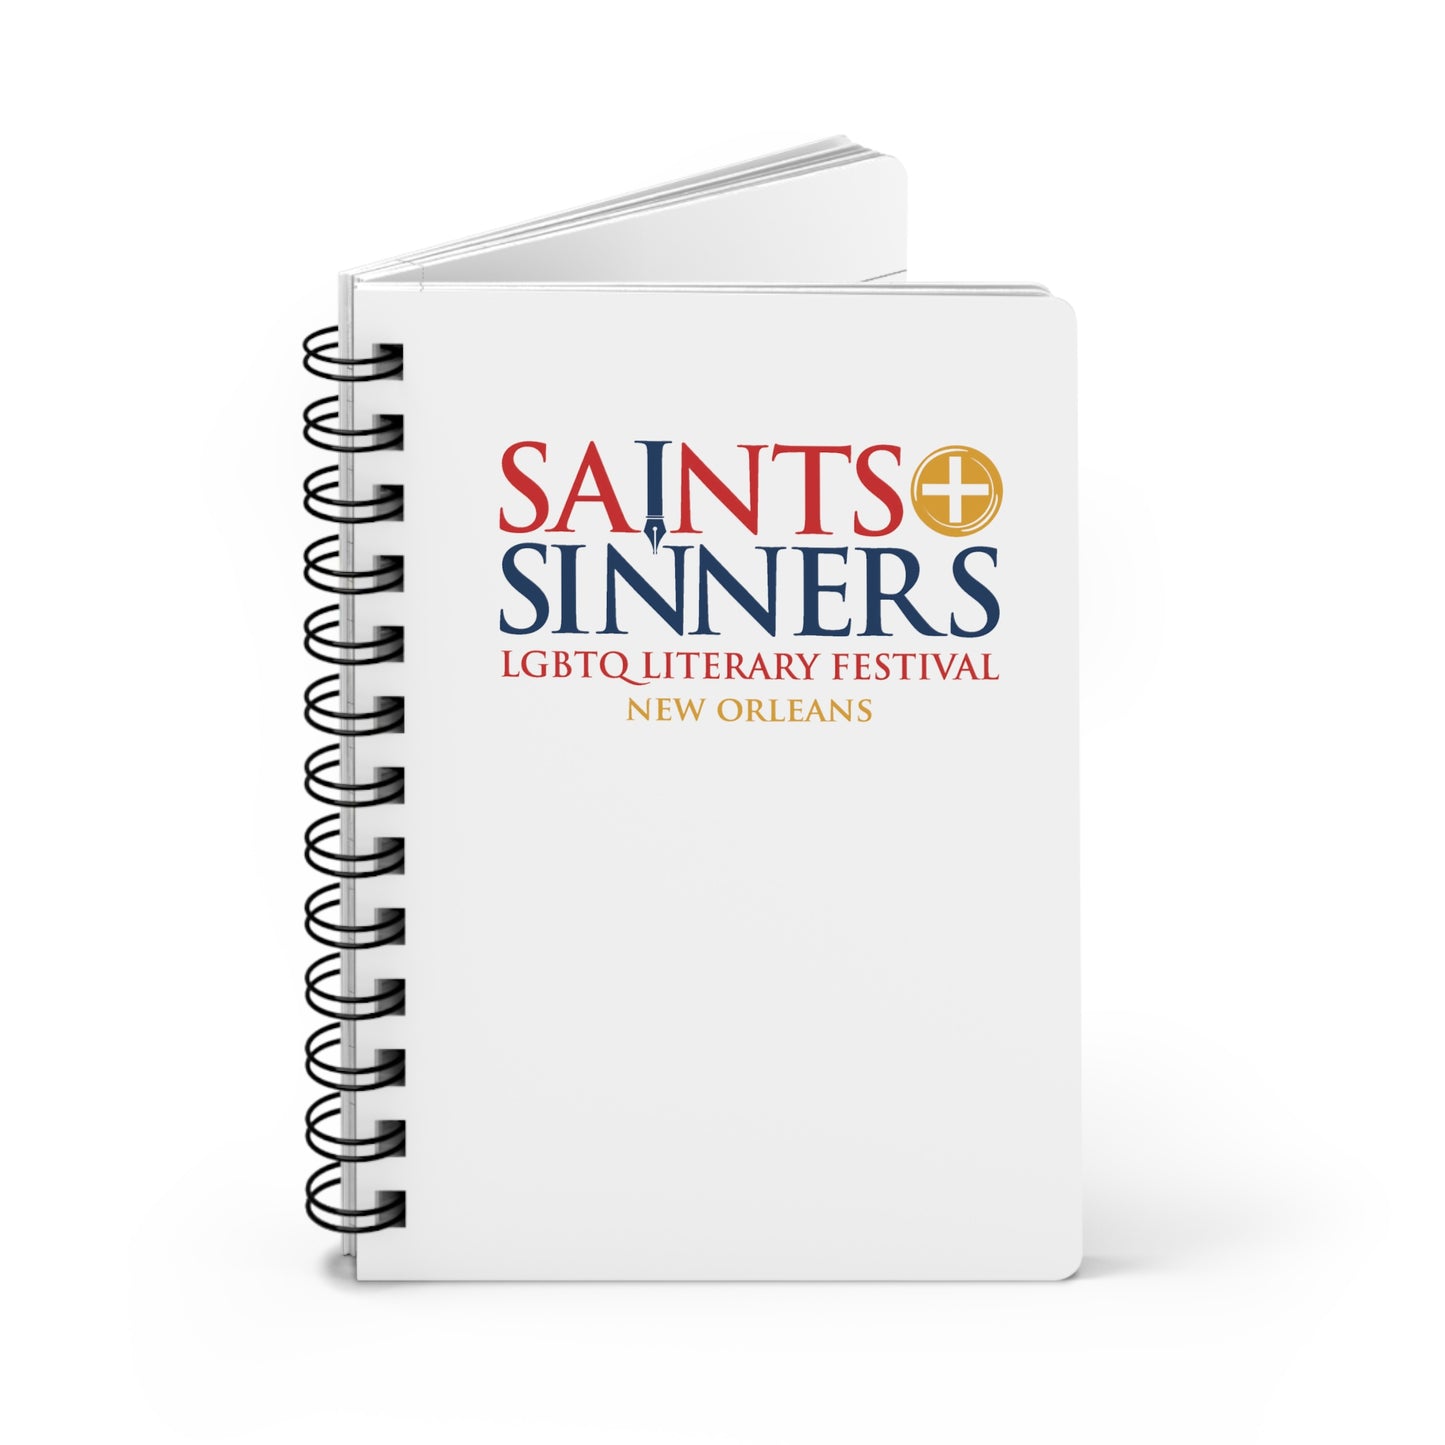 Saints & Sinners Logo Spiral Bound Journal - White